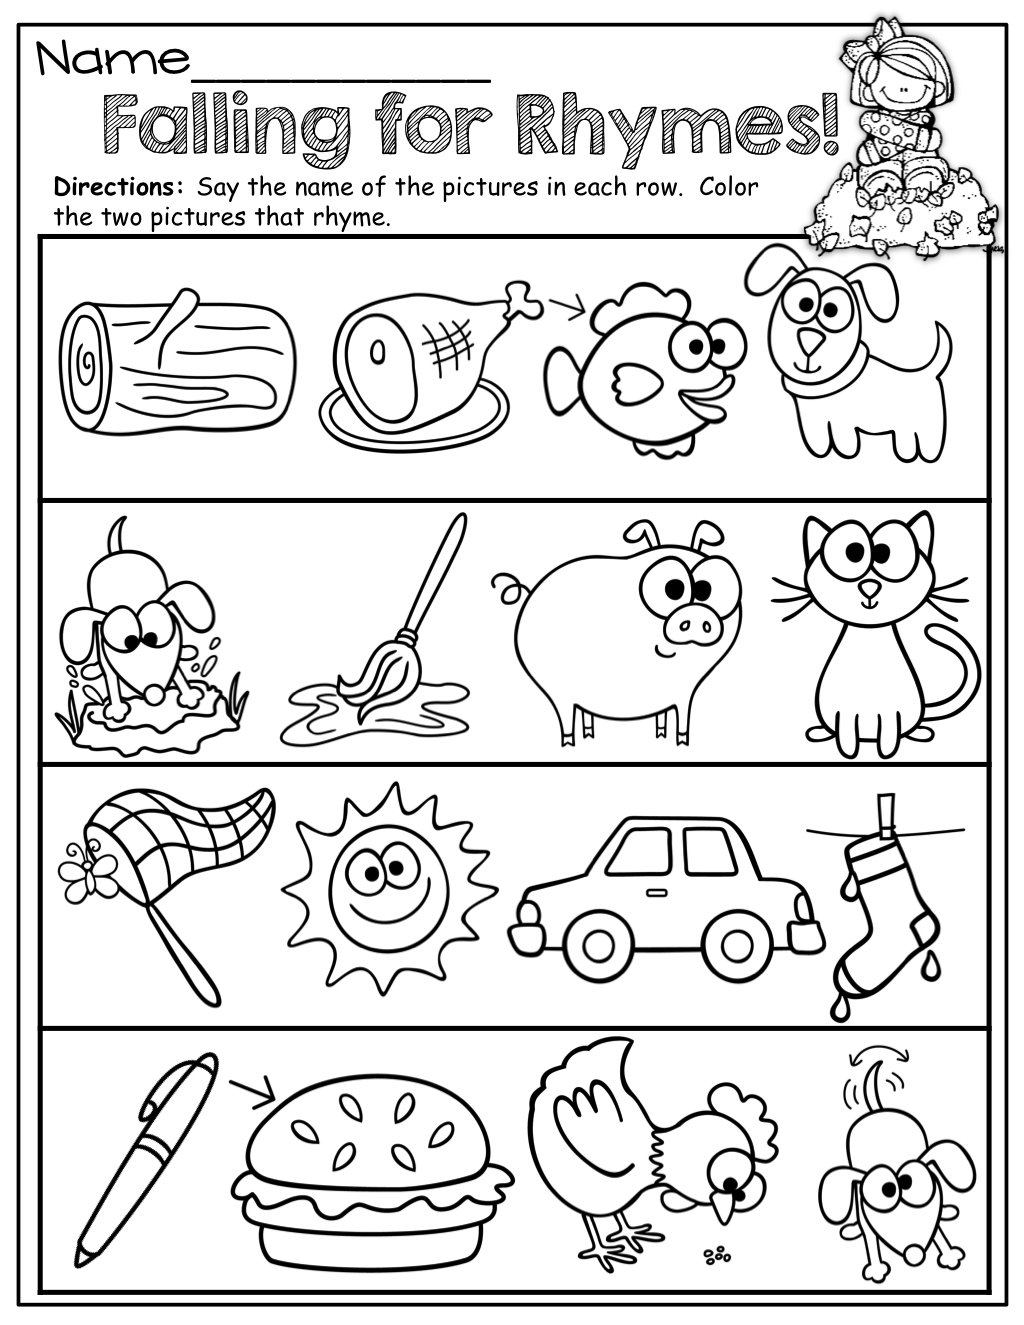 Rhyming Words Worksheet Free Kindergarten English Worksheet For Kids Free Printable Rhyming 